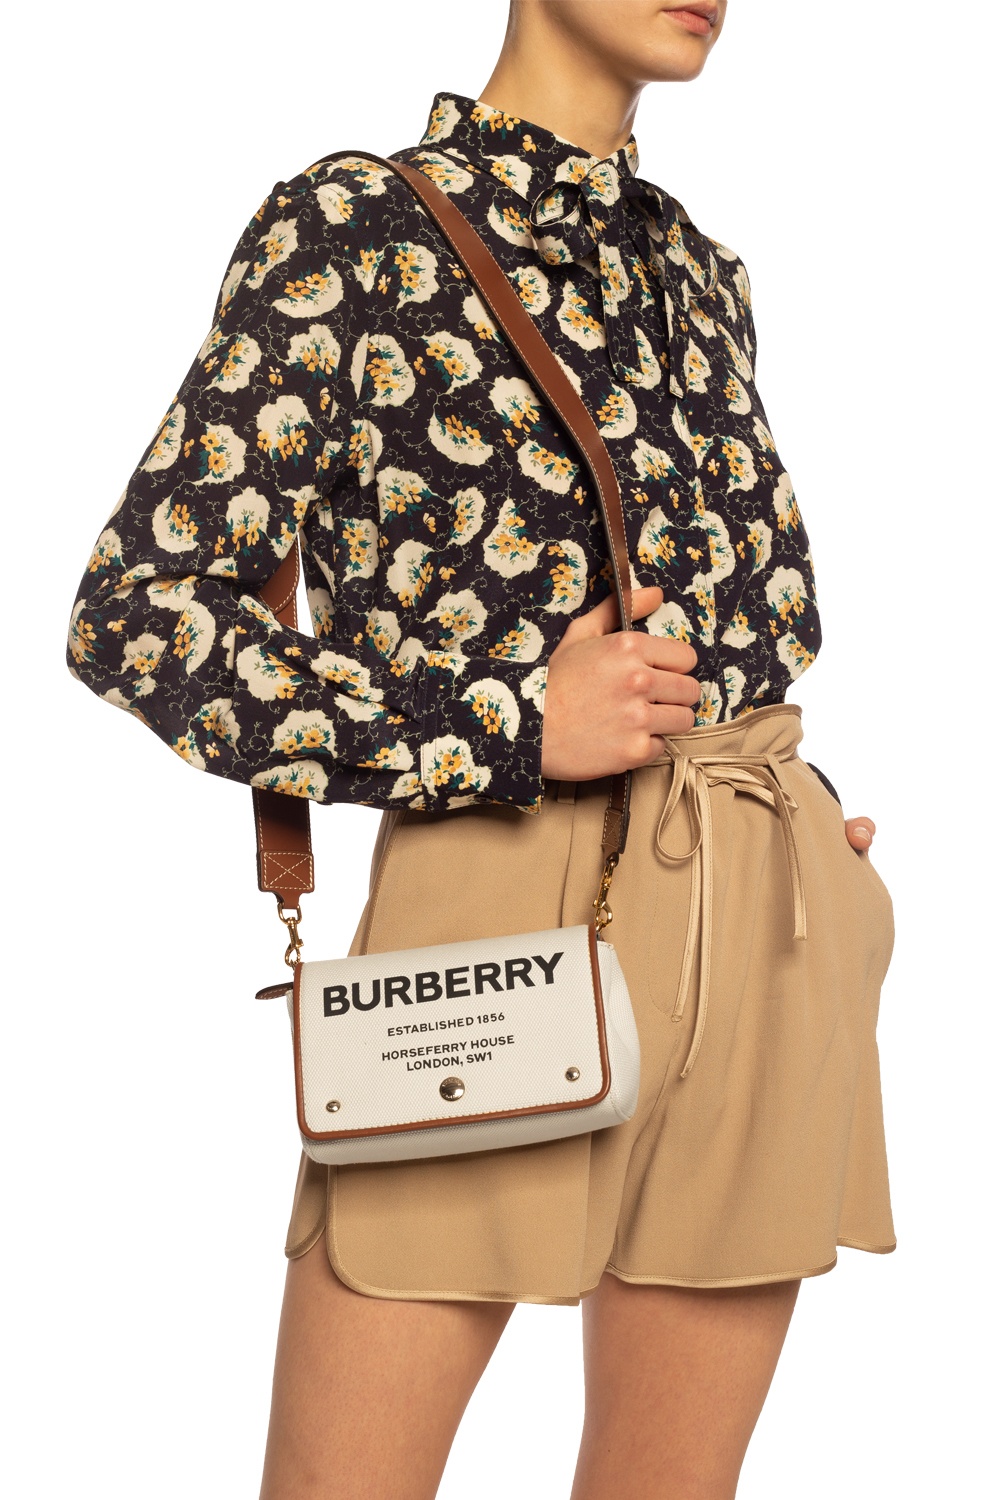 burberry hackberry bag